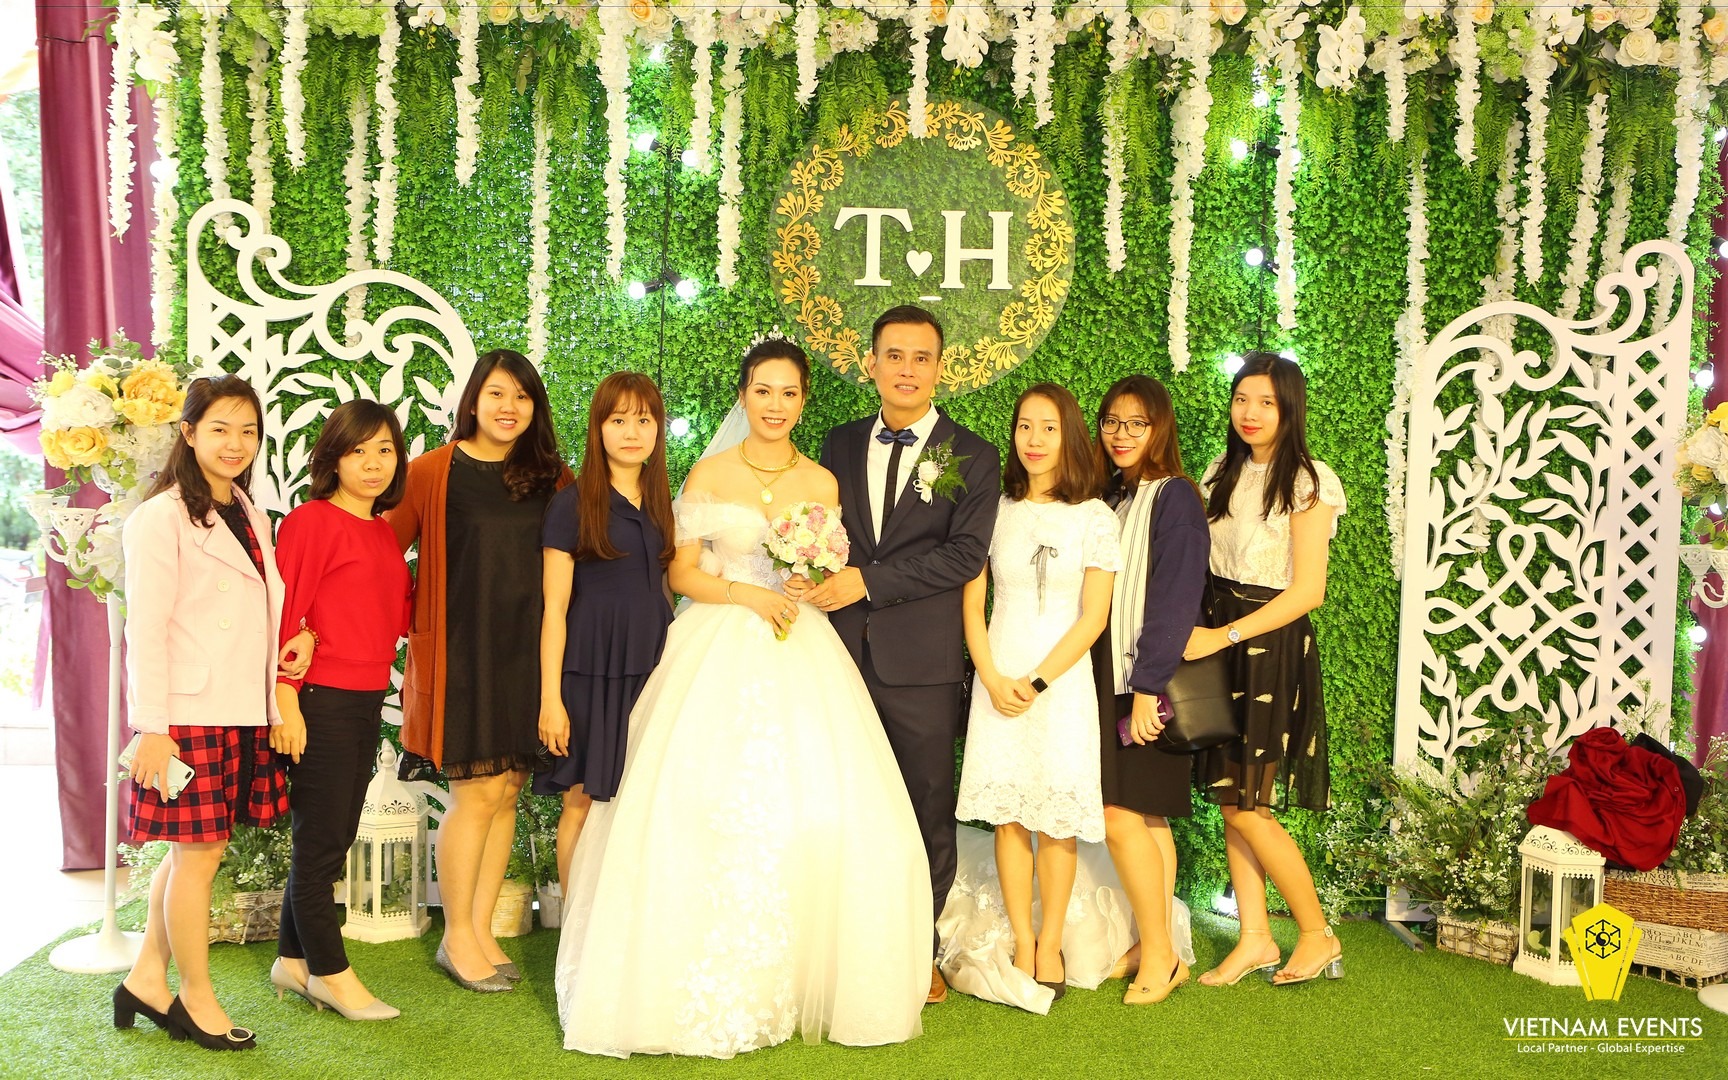 Tung Son's Wedding Party